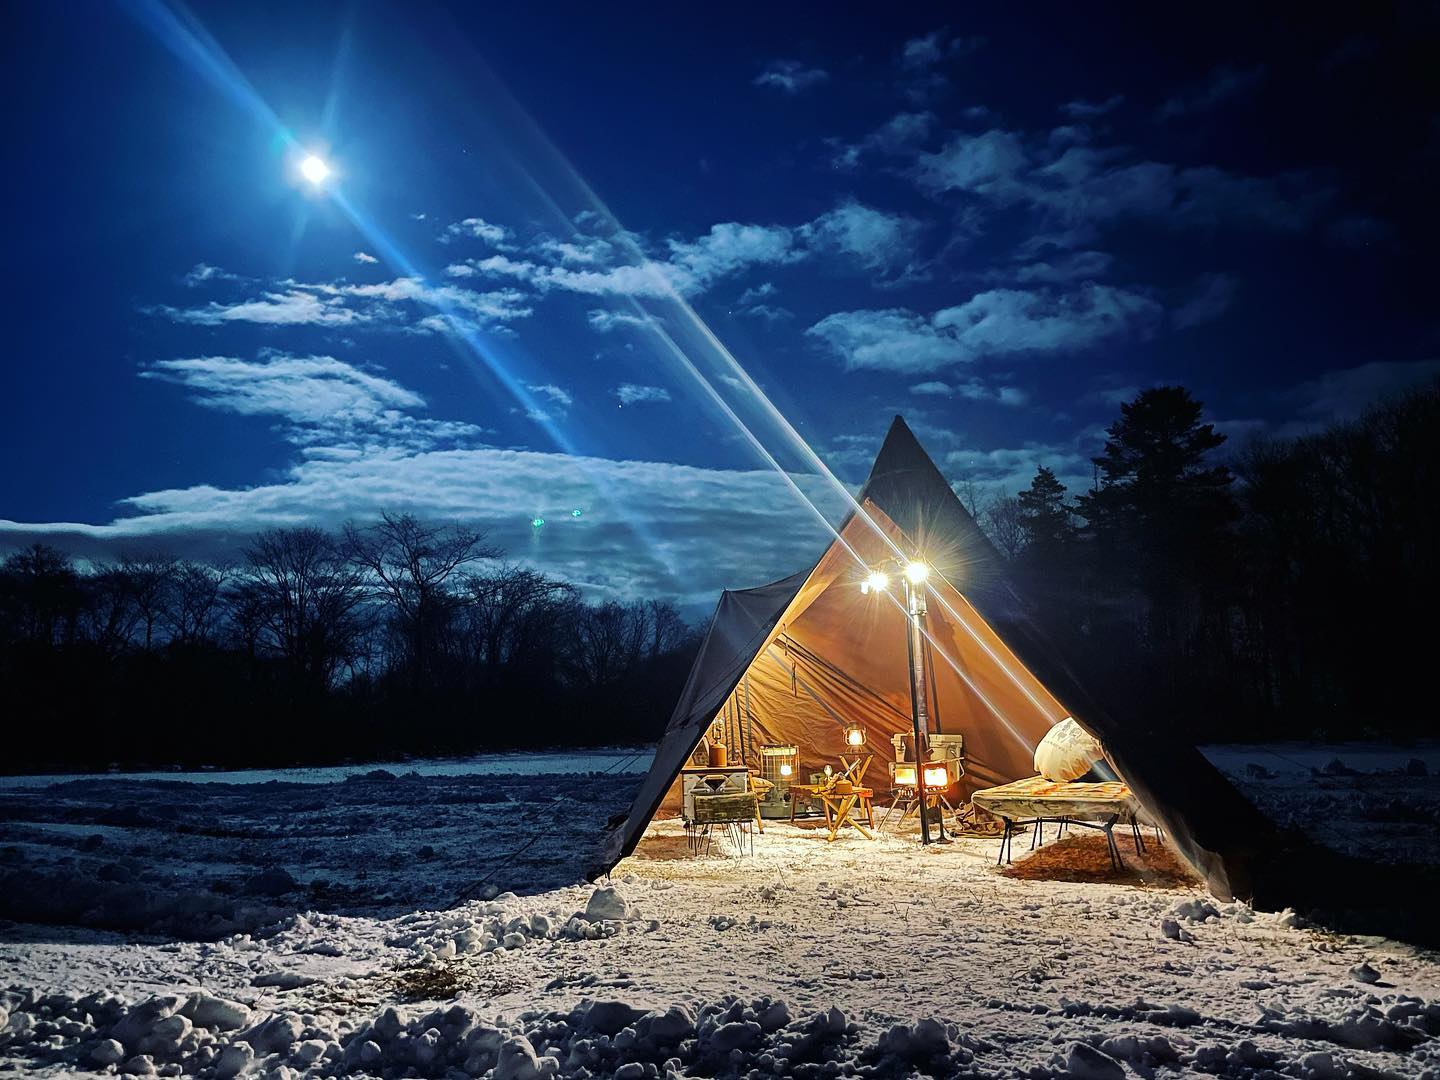 Winter camp in the moonlight (Noboribetsu)